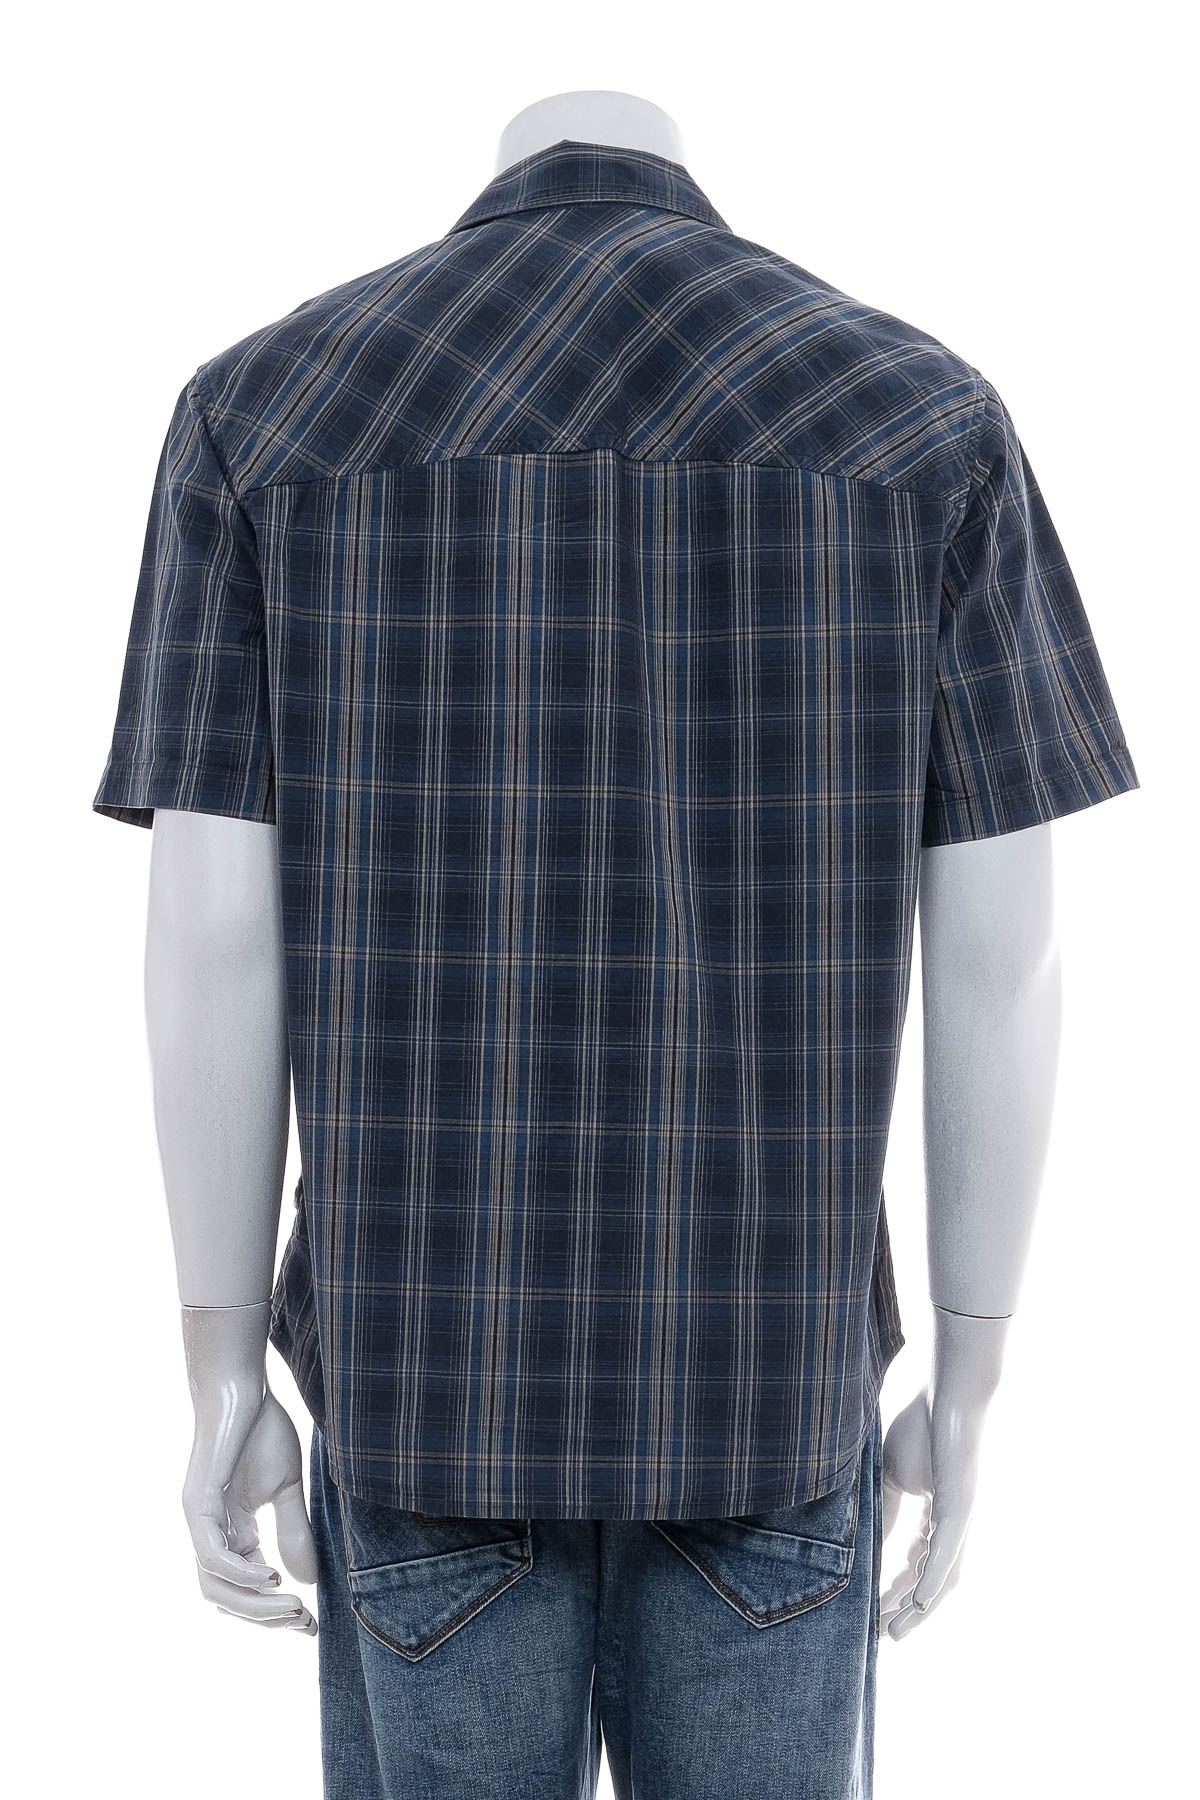 Ανδρικό πουκάμισο - Jack Wolfskin - 1